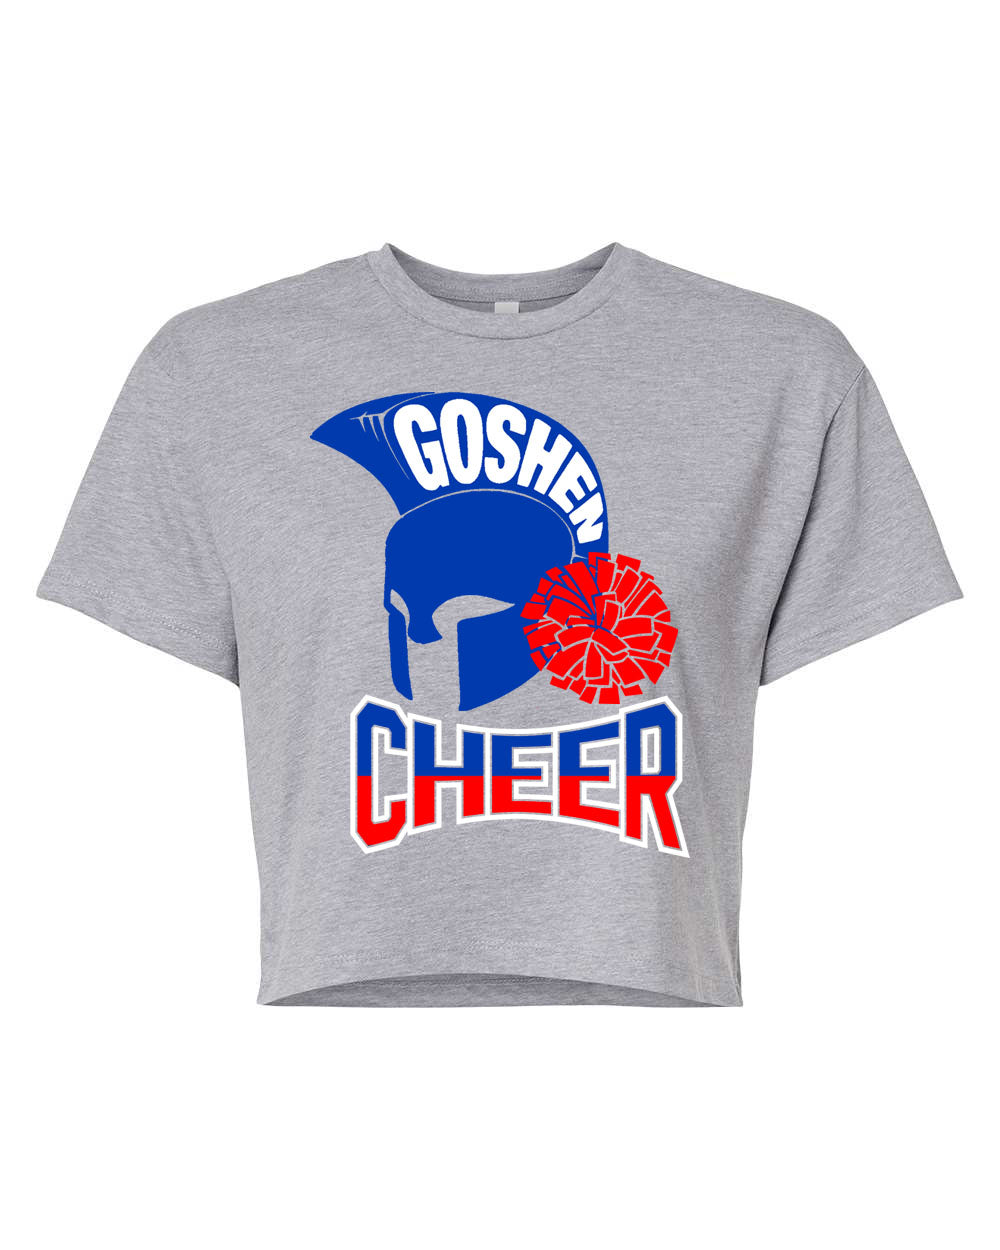 Goshen Cheer Design 8 Crop Top